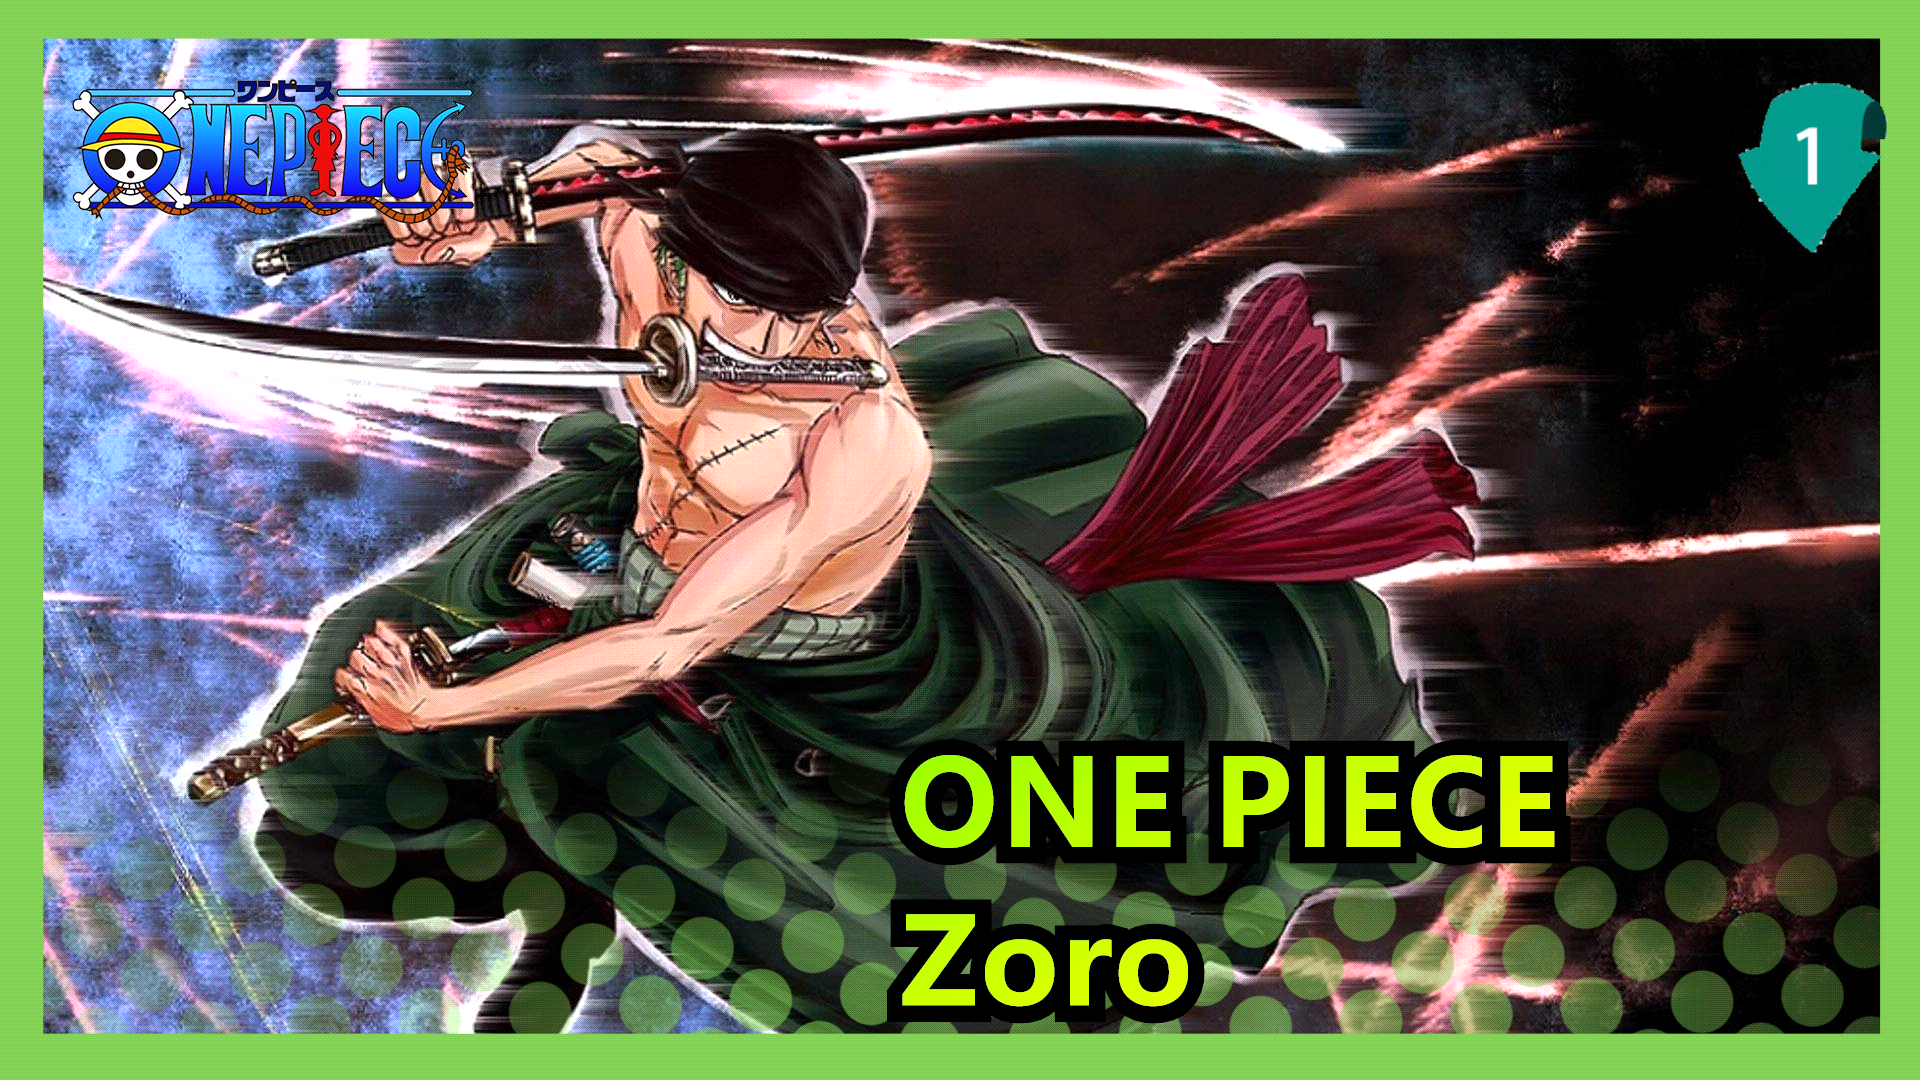 Bạn muốn khám phá một con thú đặc biệt trong anime One Piece? Hãy xem bức ảnh Epic về Zoro và bạn sẽ thấy một con thú không bao giờ cắn chết người. Và bạn sẽ cảm nhận được sức mạnh của nhân vật này.